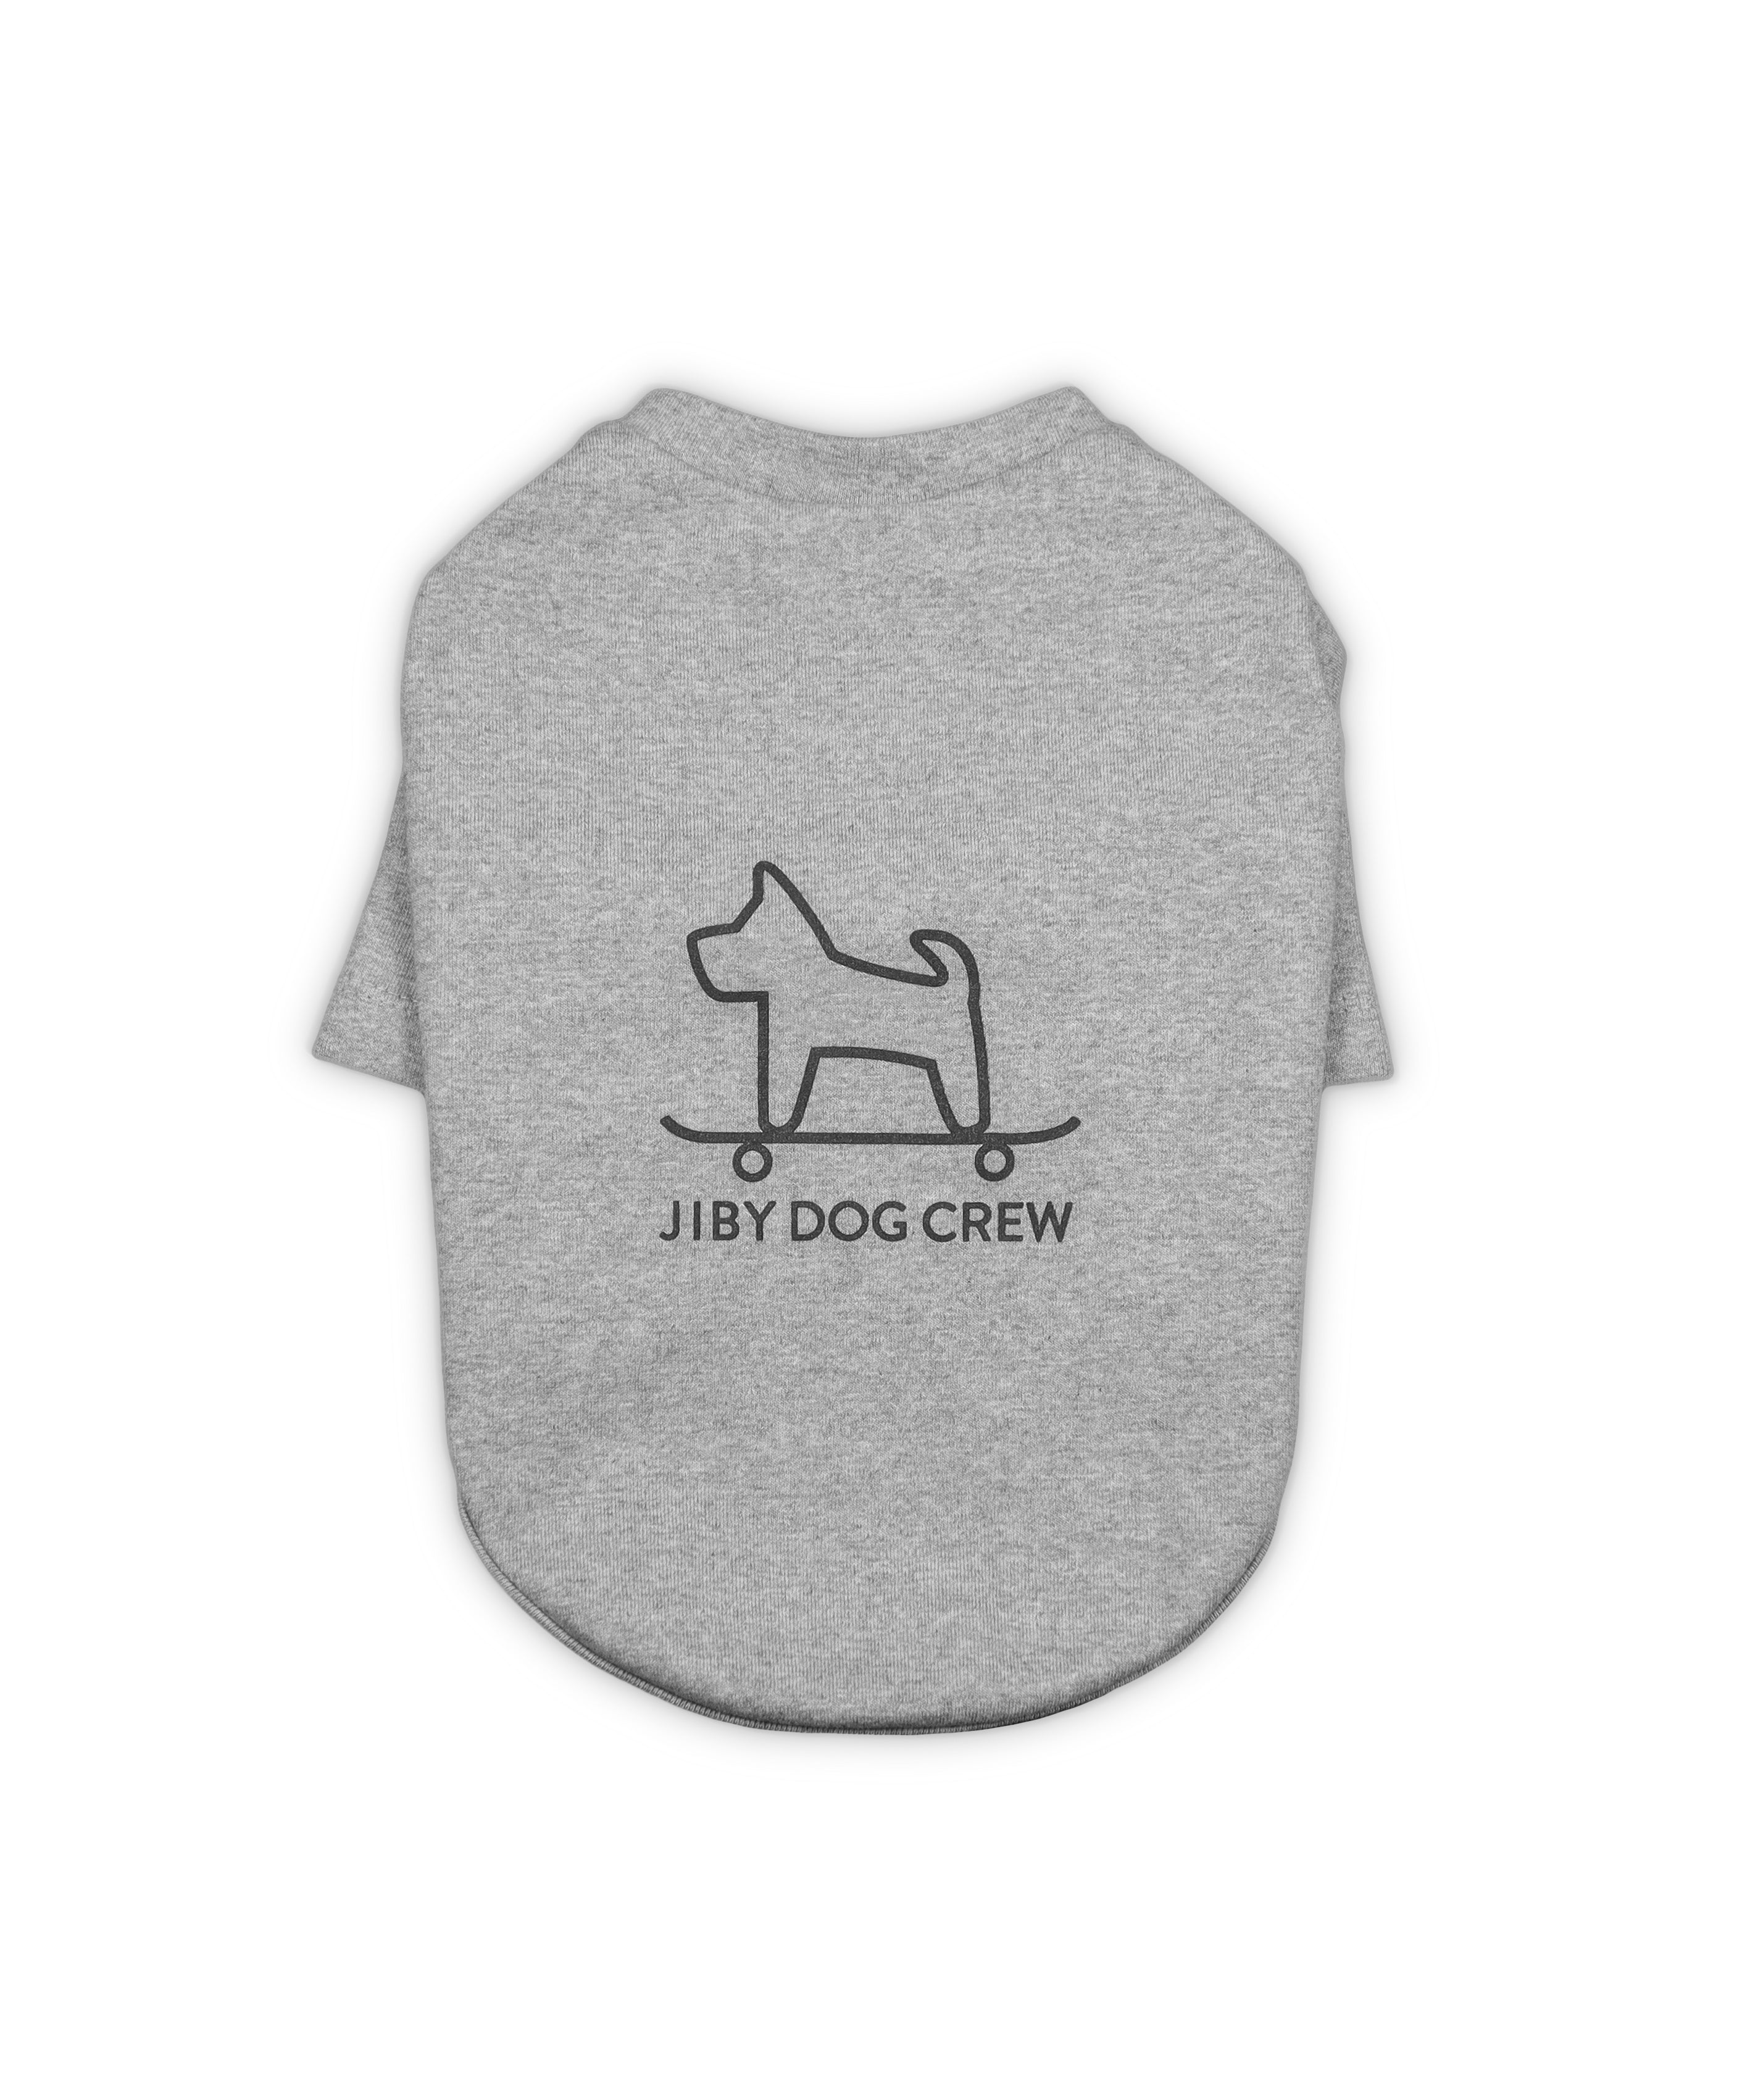 Skatebowls – Jiby Dog Crew